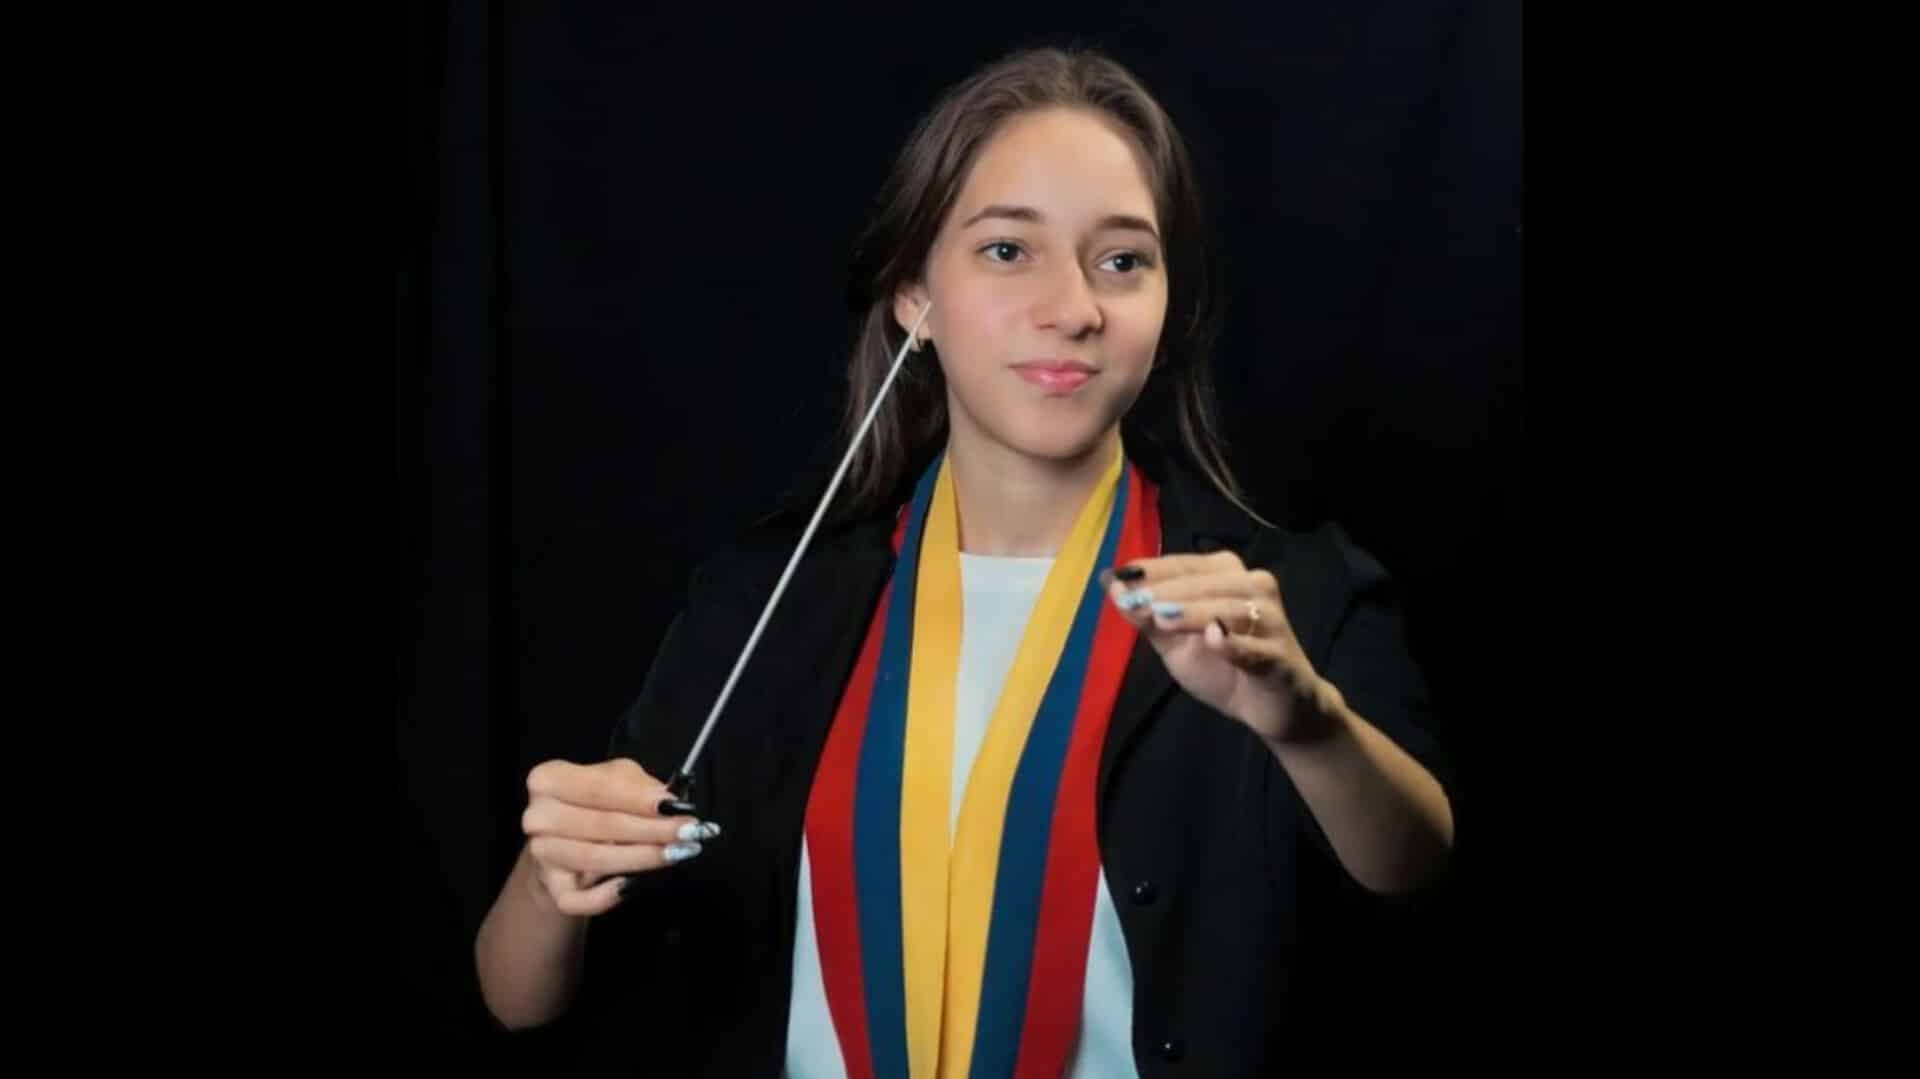 Urielis Arroyo Concurso Internacional de Música Vivaldi